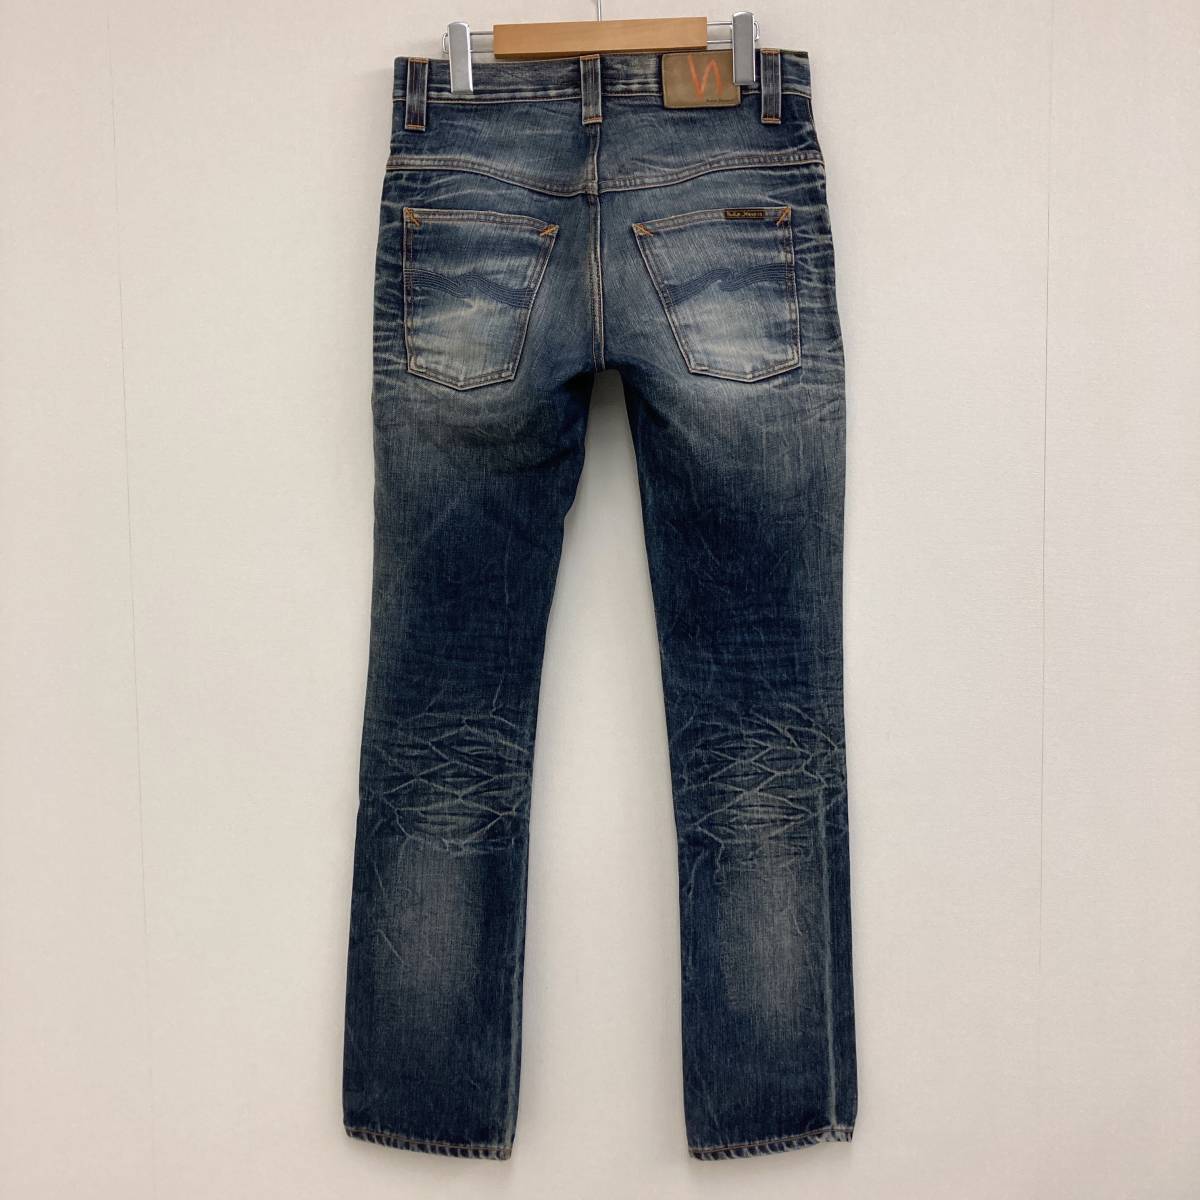 Nudie Jeans THIN FINN イタリア製 ユーズド加工 スキニージーンズ W29 スリム ヌーディージーンズ シンフィン デニムパンツ 3020340_画像2